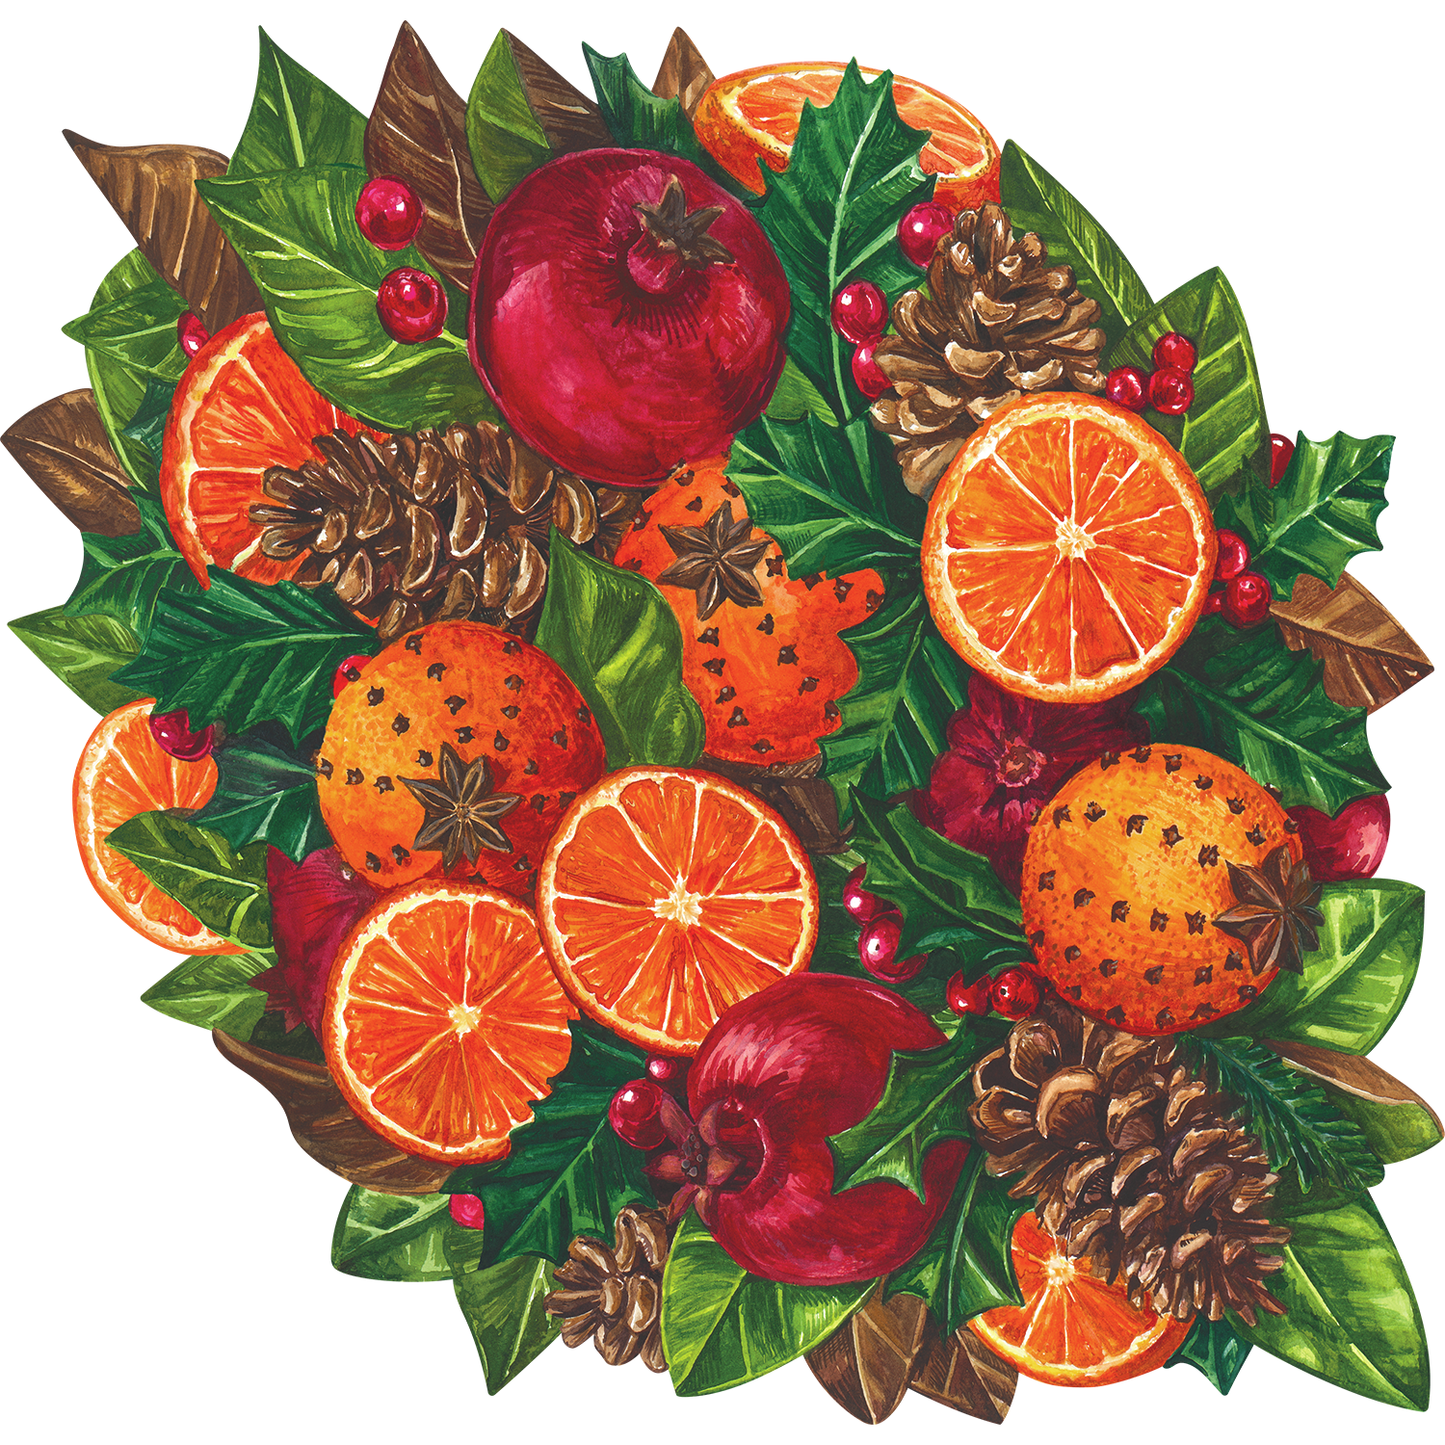 Die Cut Winter Citrus Placemats